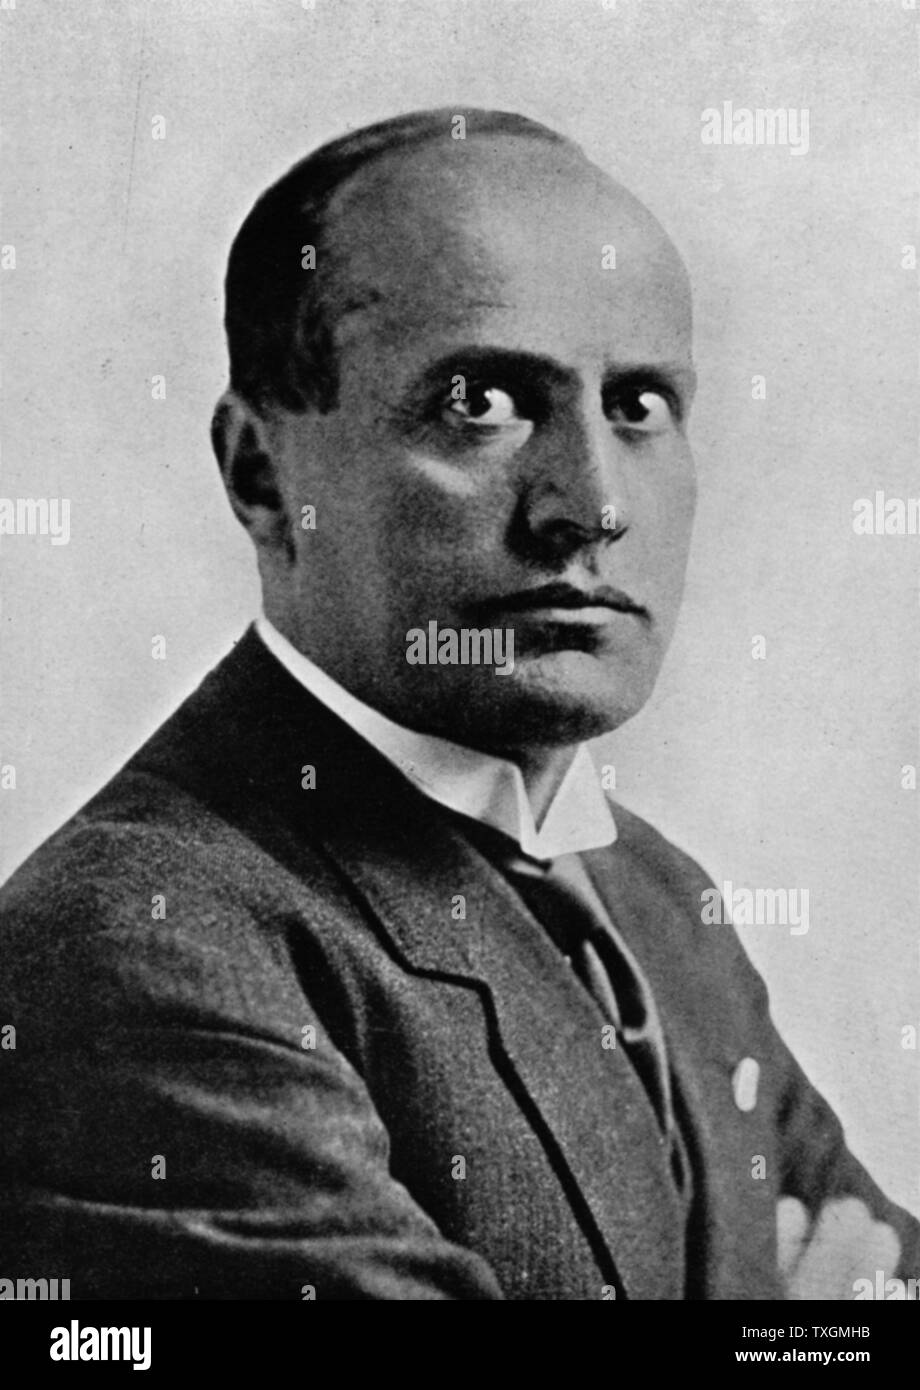 Portrait de Benito Mussolini (1883-1945), "Il Duce", dictateur fasciste italien Banque D'Images